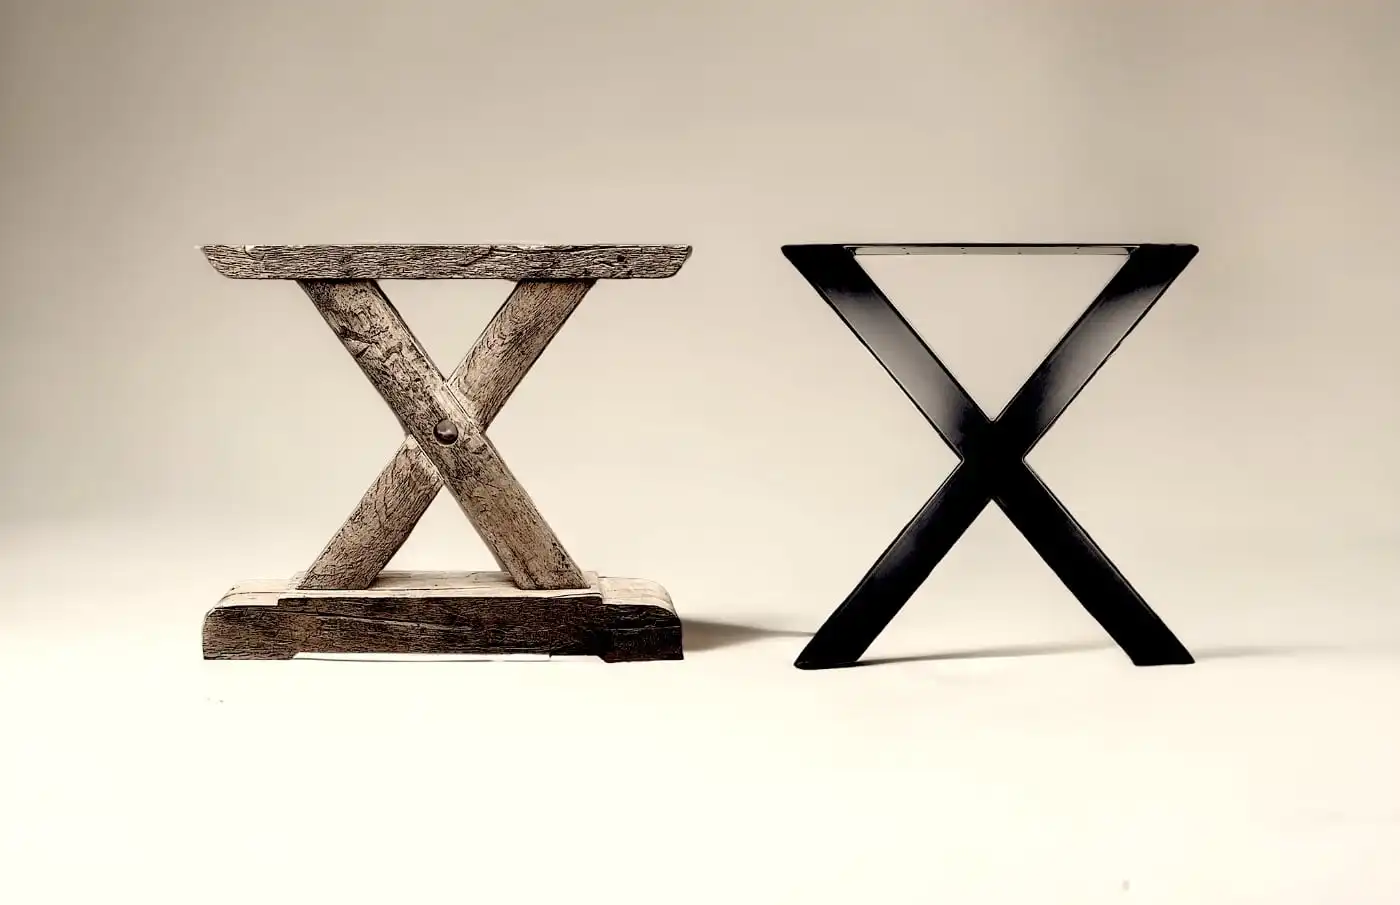 Un tabouret rustique en bois avec un design en forme de X au milieu.